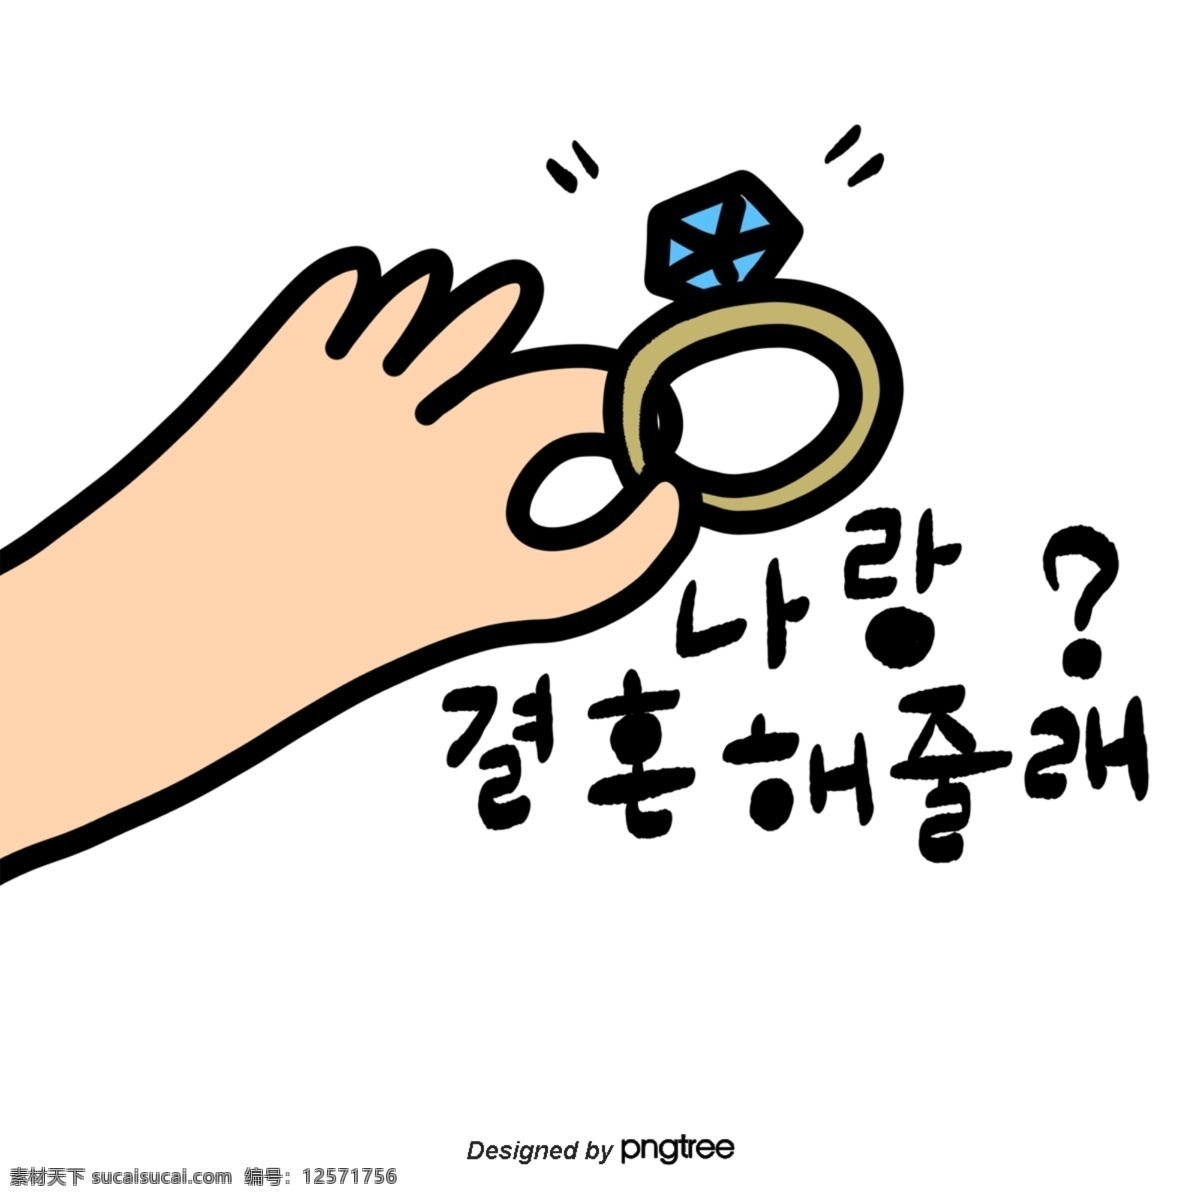 可爱 韩文 字体 戒指 结婚 旧婚 跟我结婚吧 钻石 钻戒 发光 卡通 铸件 手印